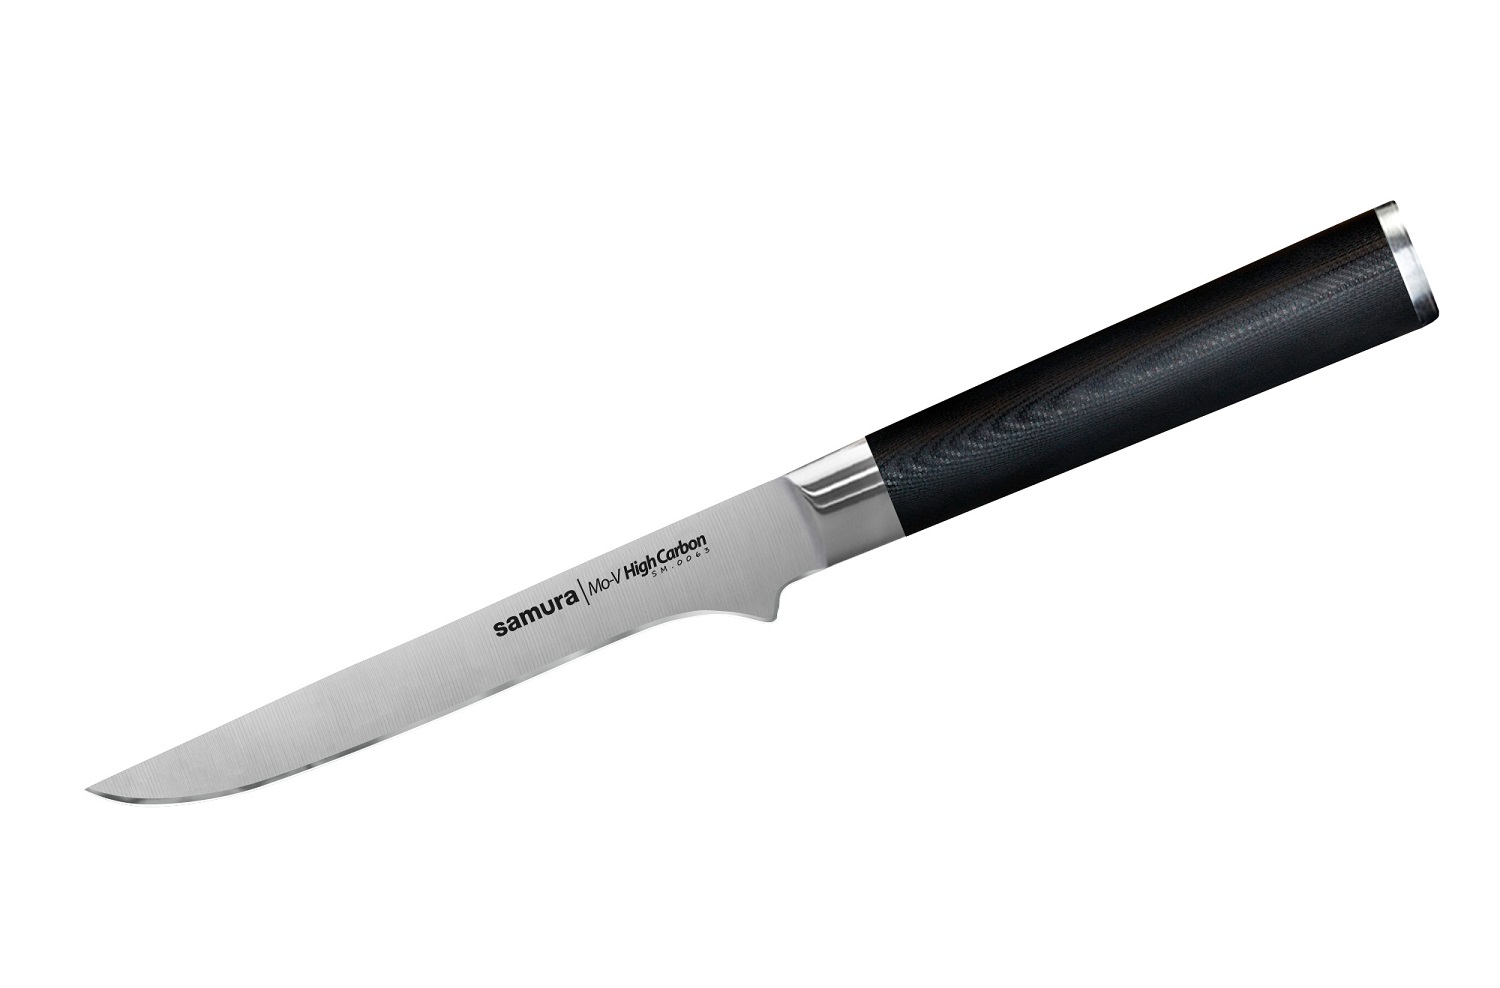 Нож Samura обвалочный Mo-V, 16,5 см, G-10 нож универсальный mo v 15 см sm 0023 k samura